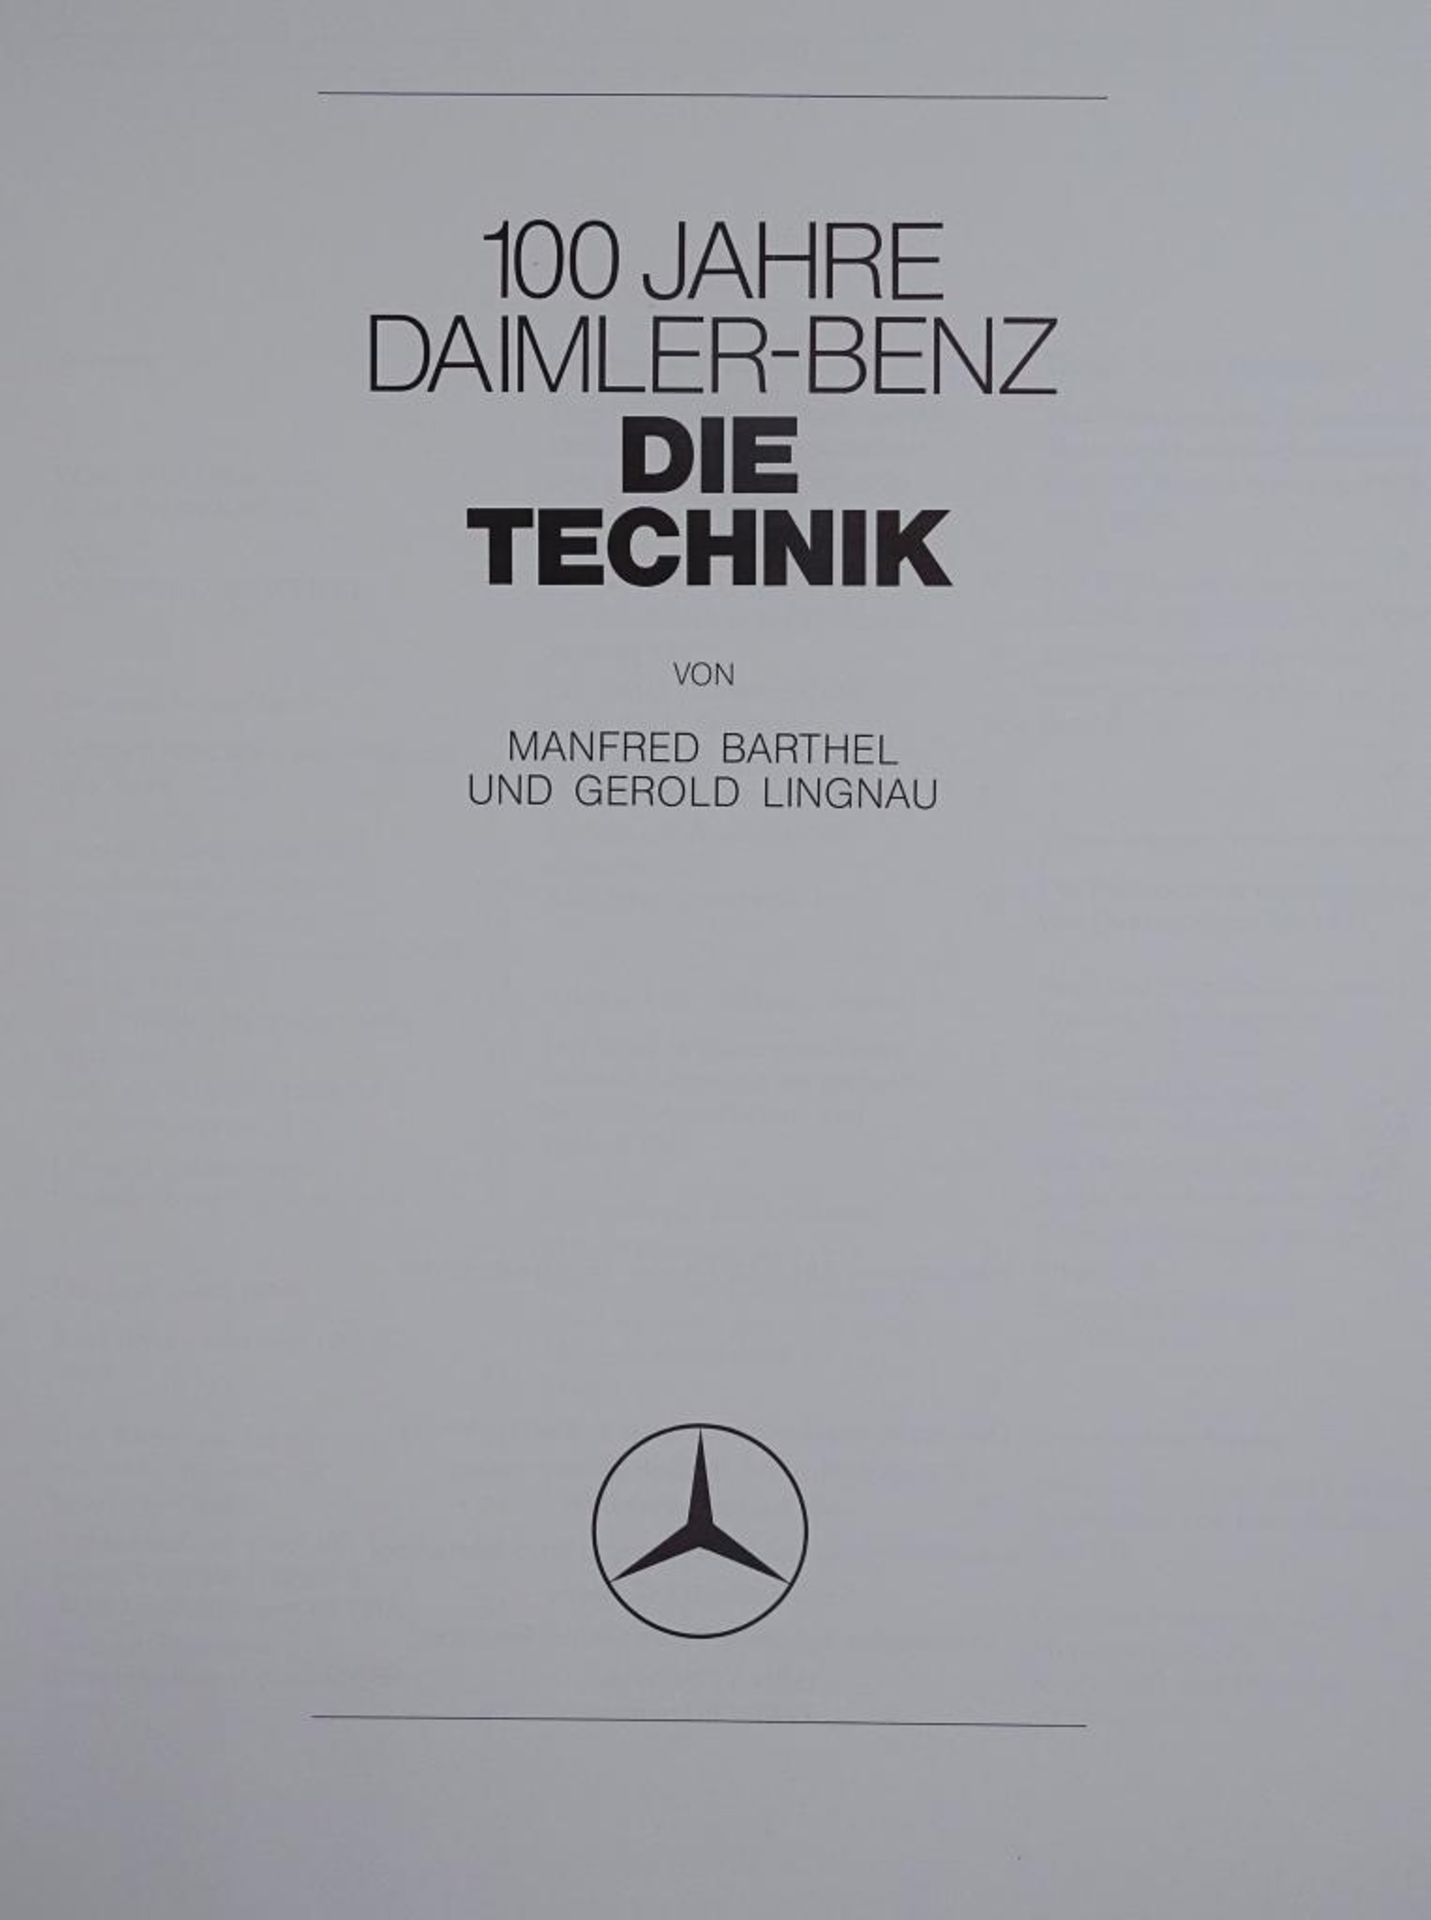 100 Jahre Daimler-Bezn, Zwei Bände, "Die Technik und das Unternehmen", 1986,im Schube - Bild 3 aus 10